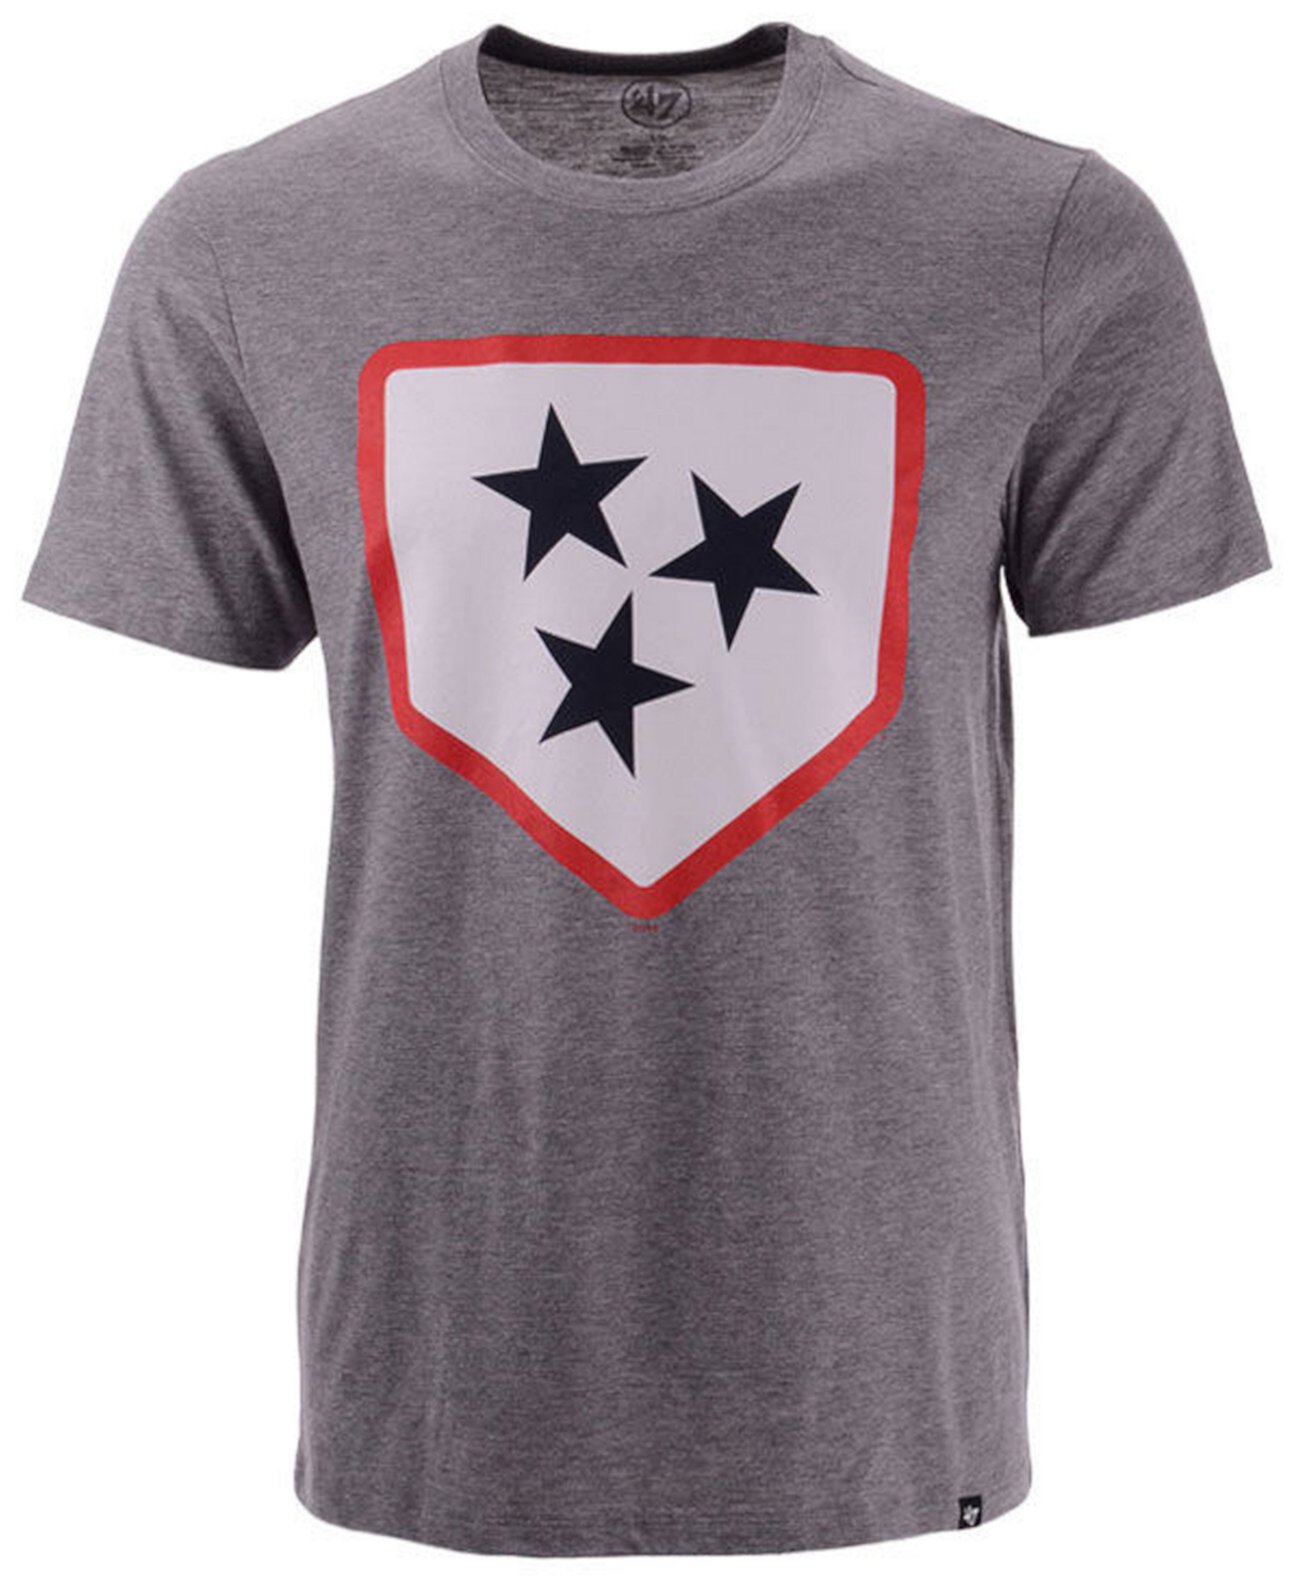 Мужская футболка с логотипом клуба Nashville Sounds '47 Brand